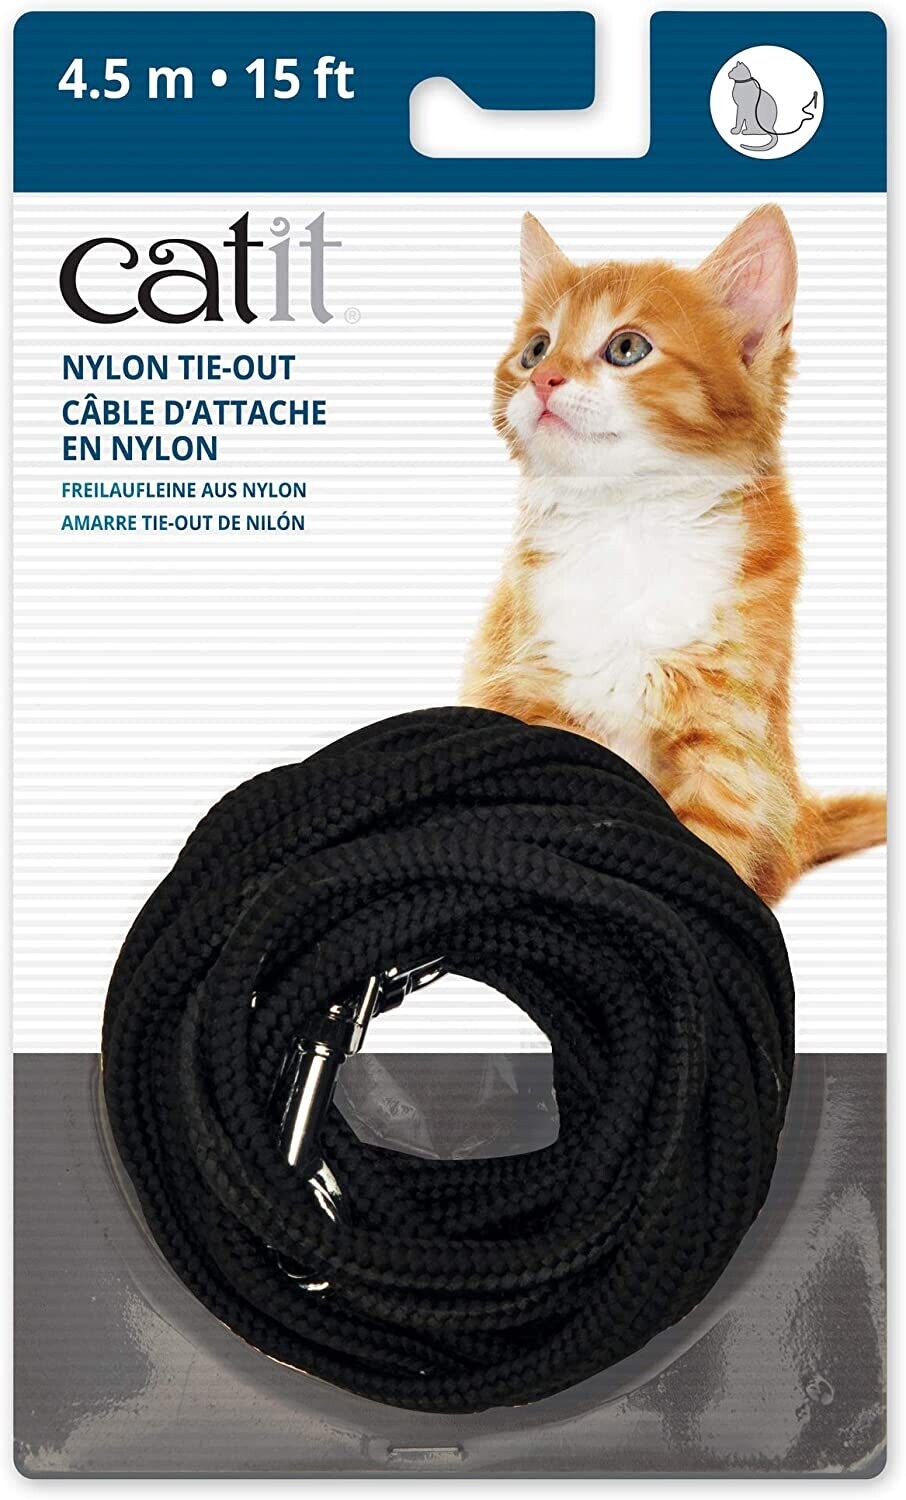 Cat-It Nylon Tie-Out 10'